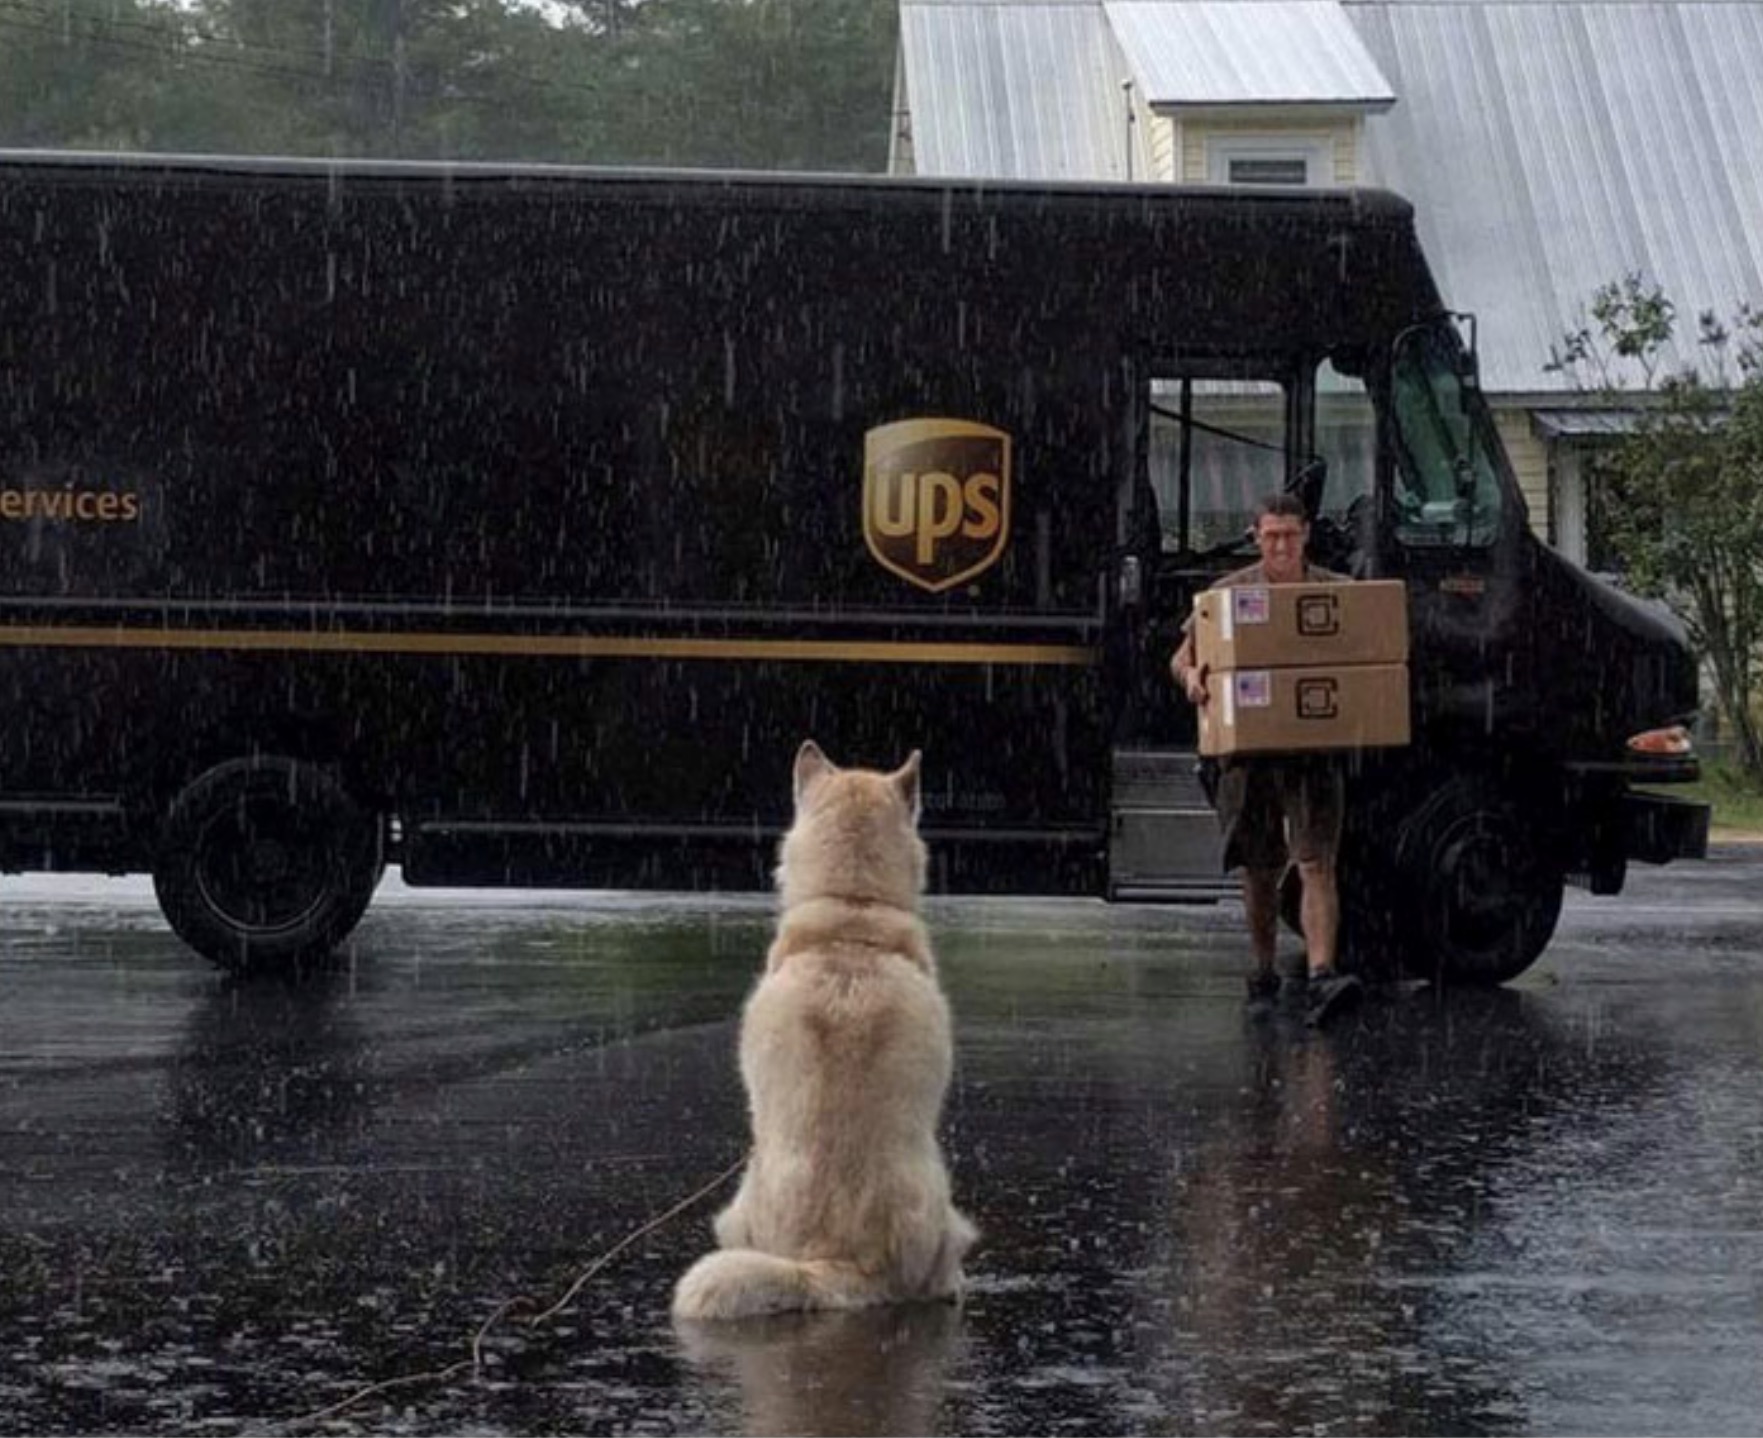 A pesar del mal tiempo, este perro espera pacientemente a su visitante de UPS.